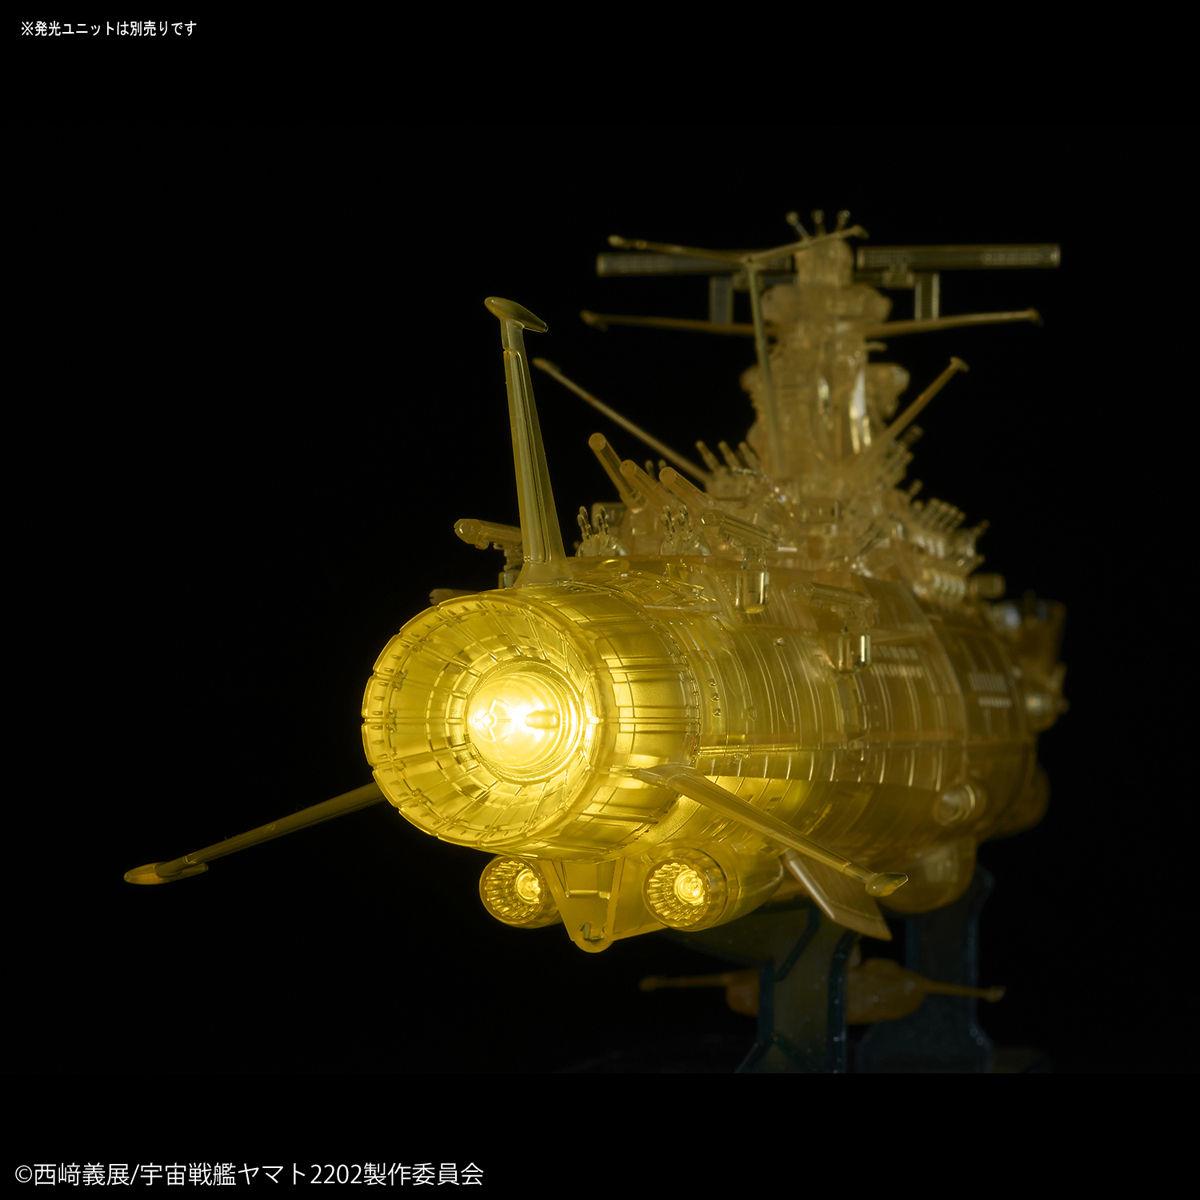 Space Battleship Yamato 2202: Yamato 2202 [Final Battle ver.] High Dimension Clear 1/1000 Model